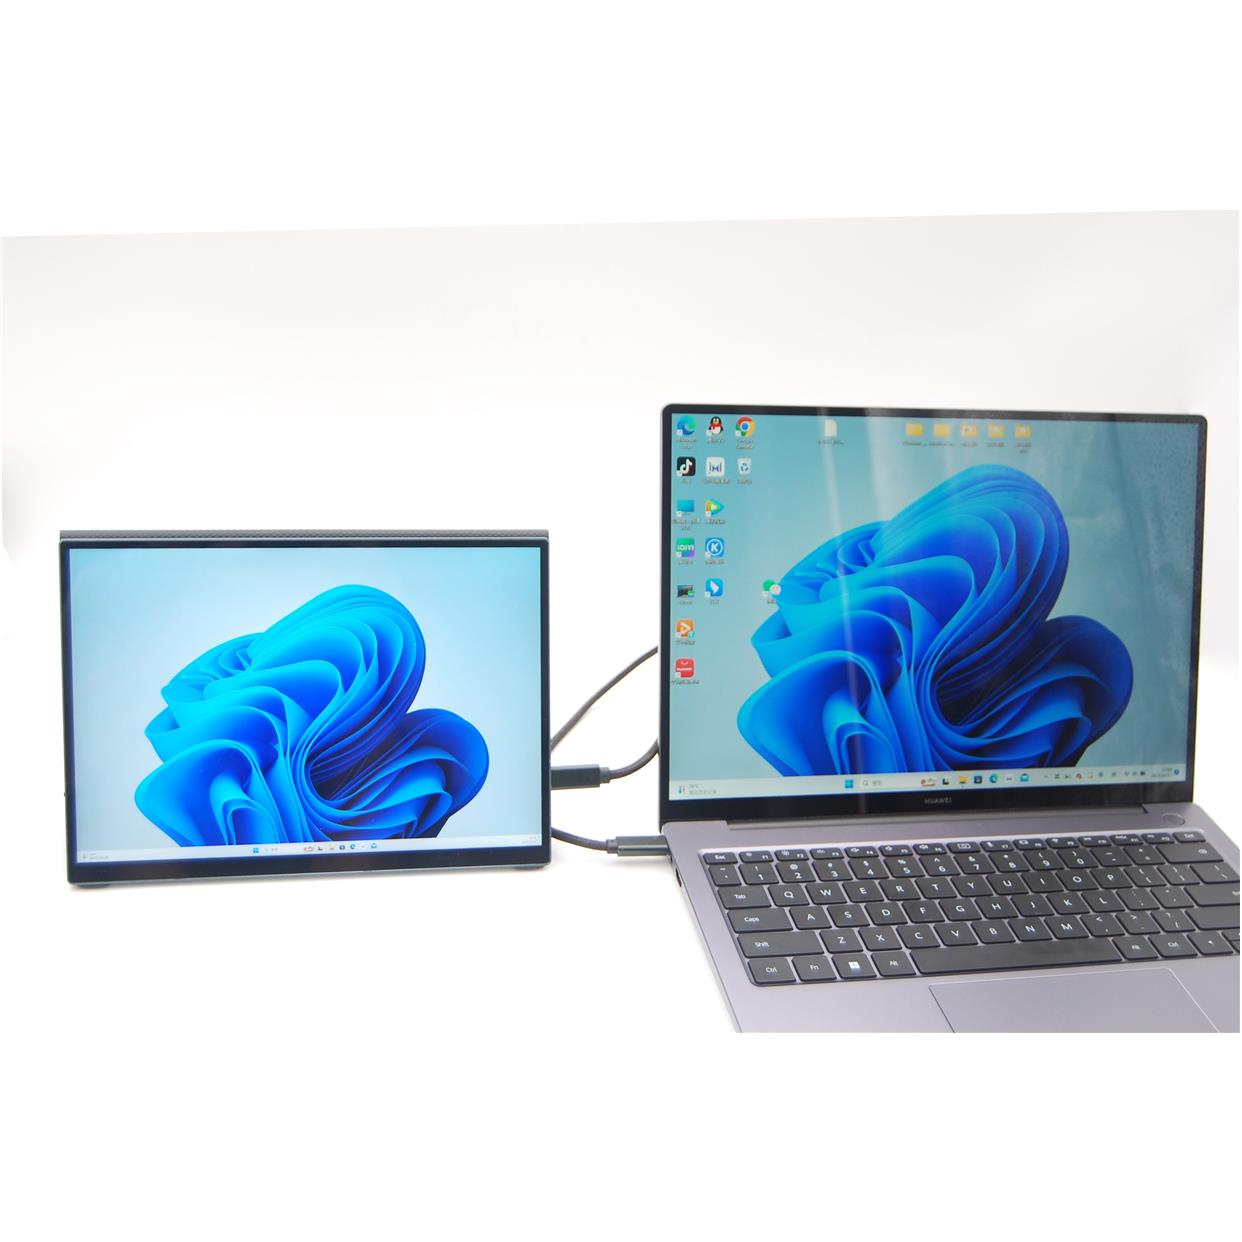 触摸扩展显示器 Adobe100%SRGB适用微软surf系列 街头光10.5寸